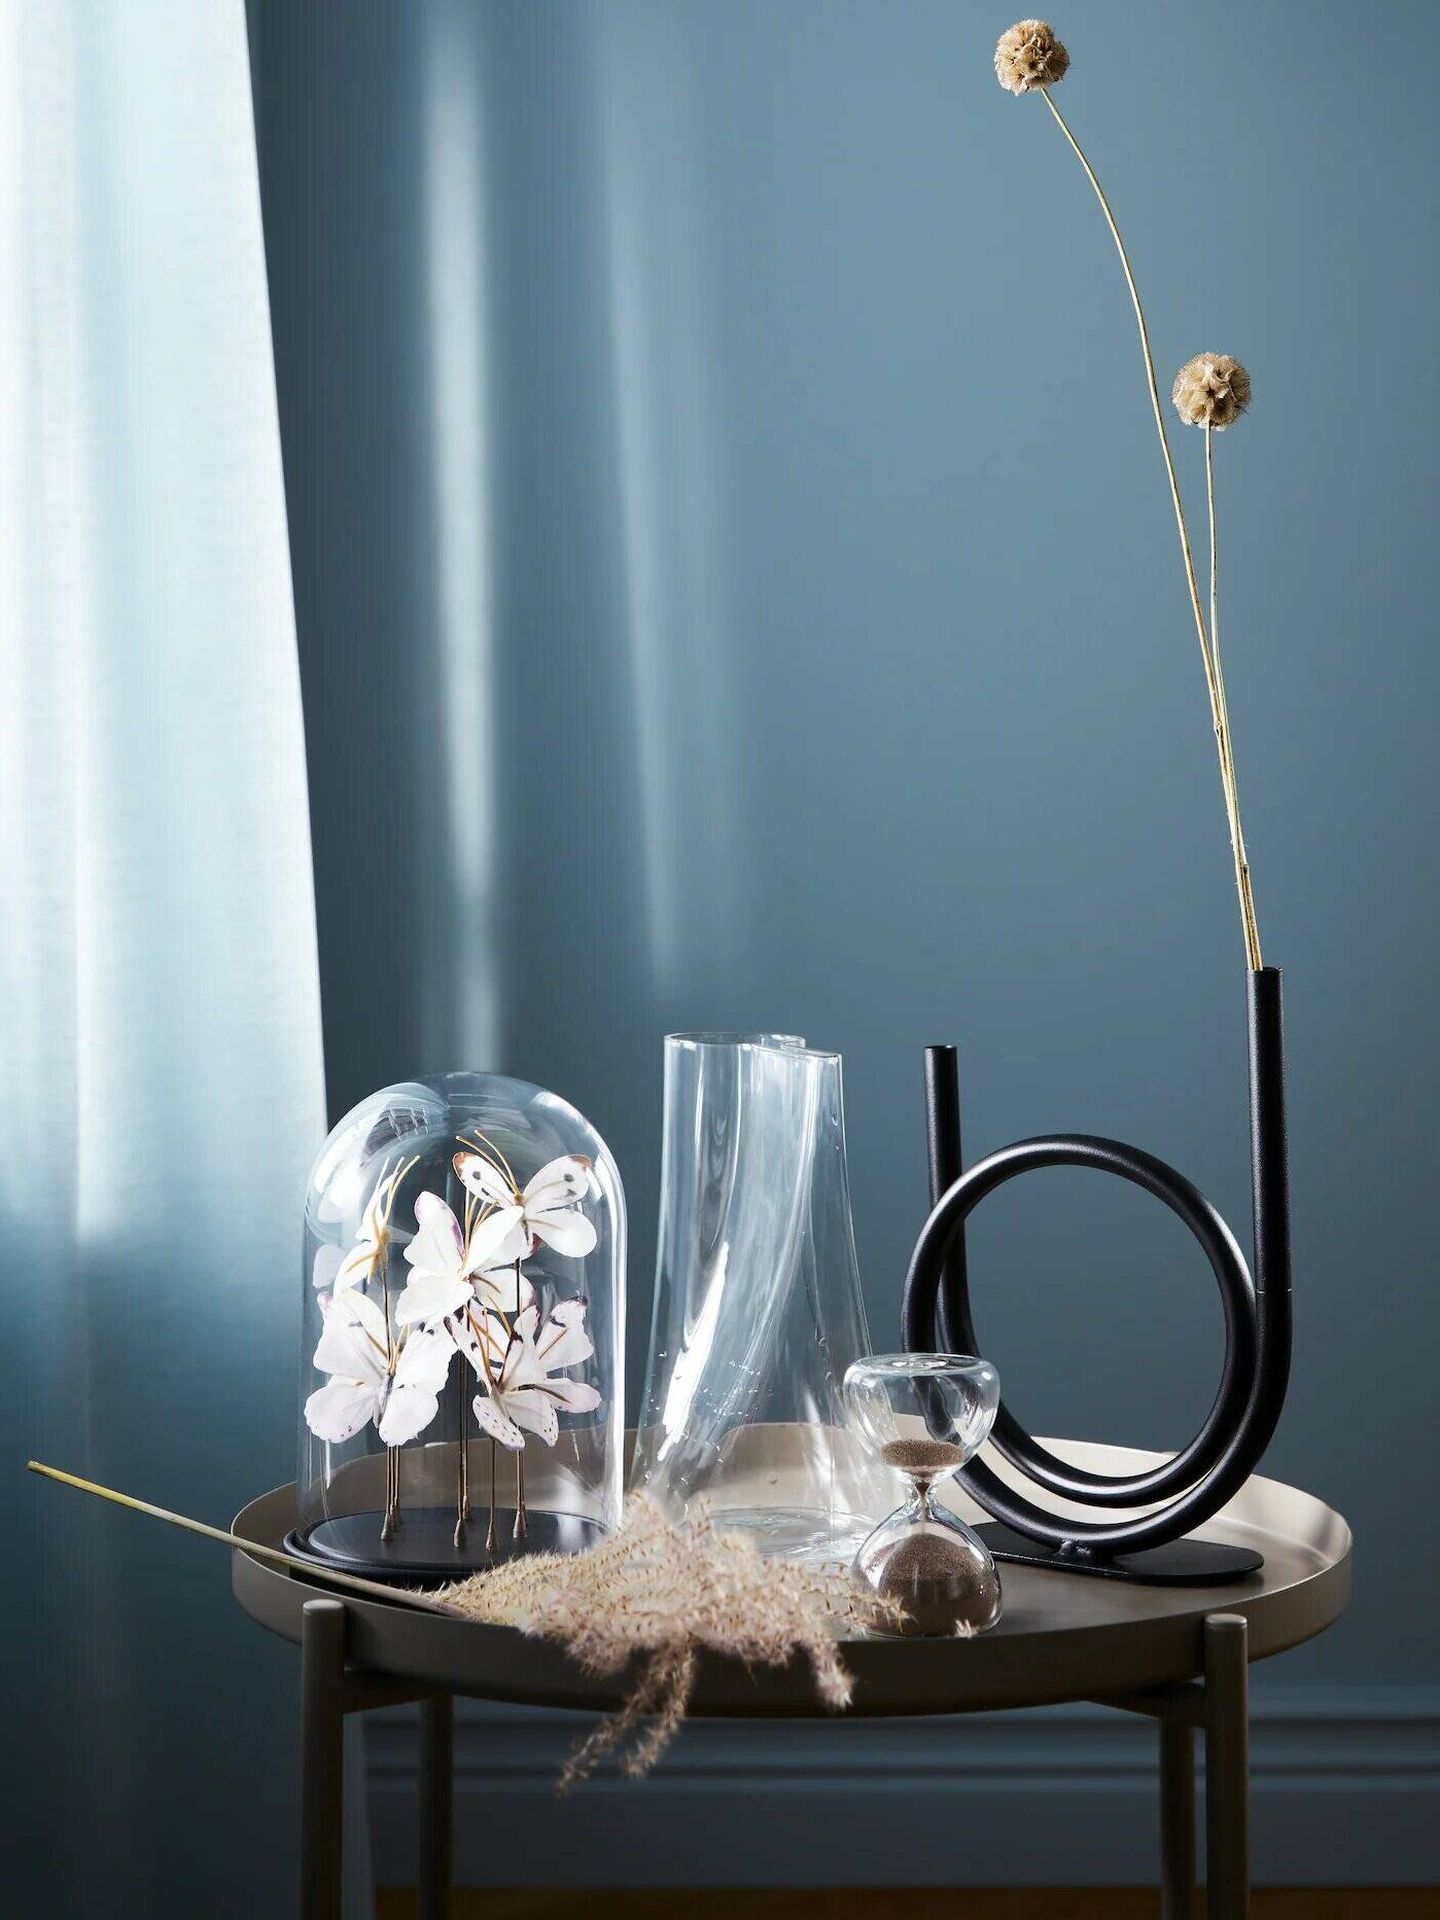 Jarrones, floreros y pantalla de cristal de novedades. (Ikea/Cortesía)